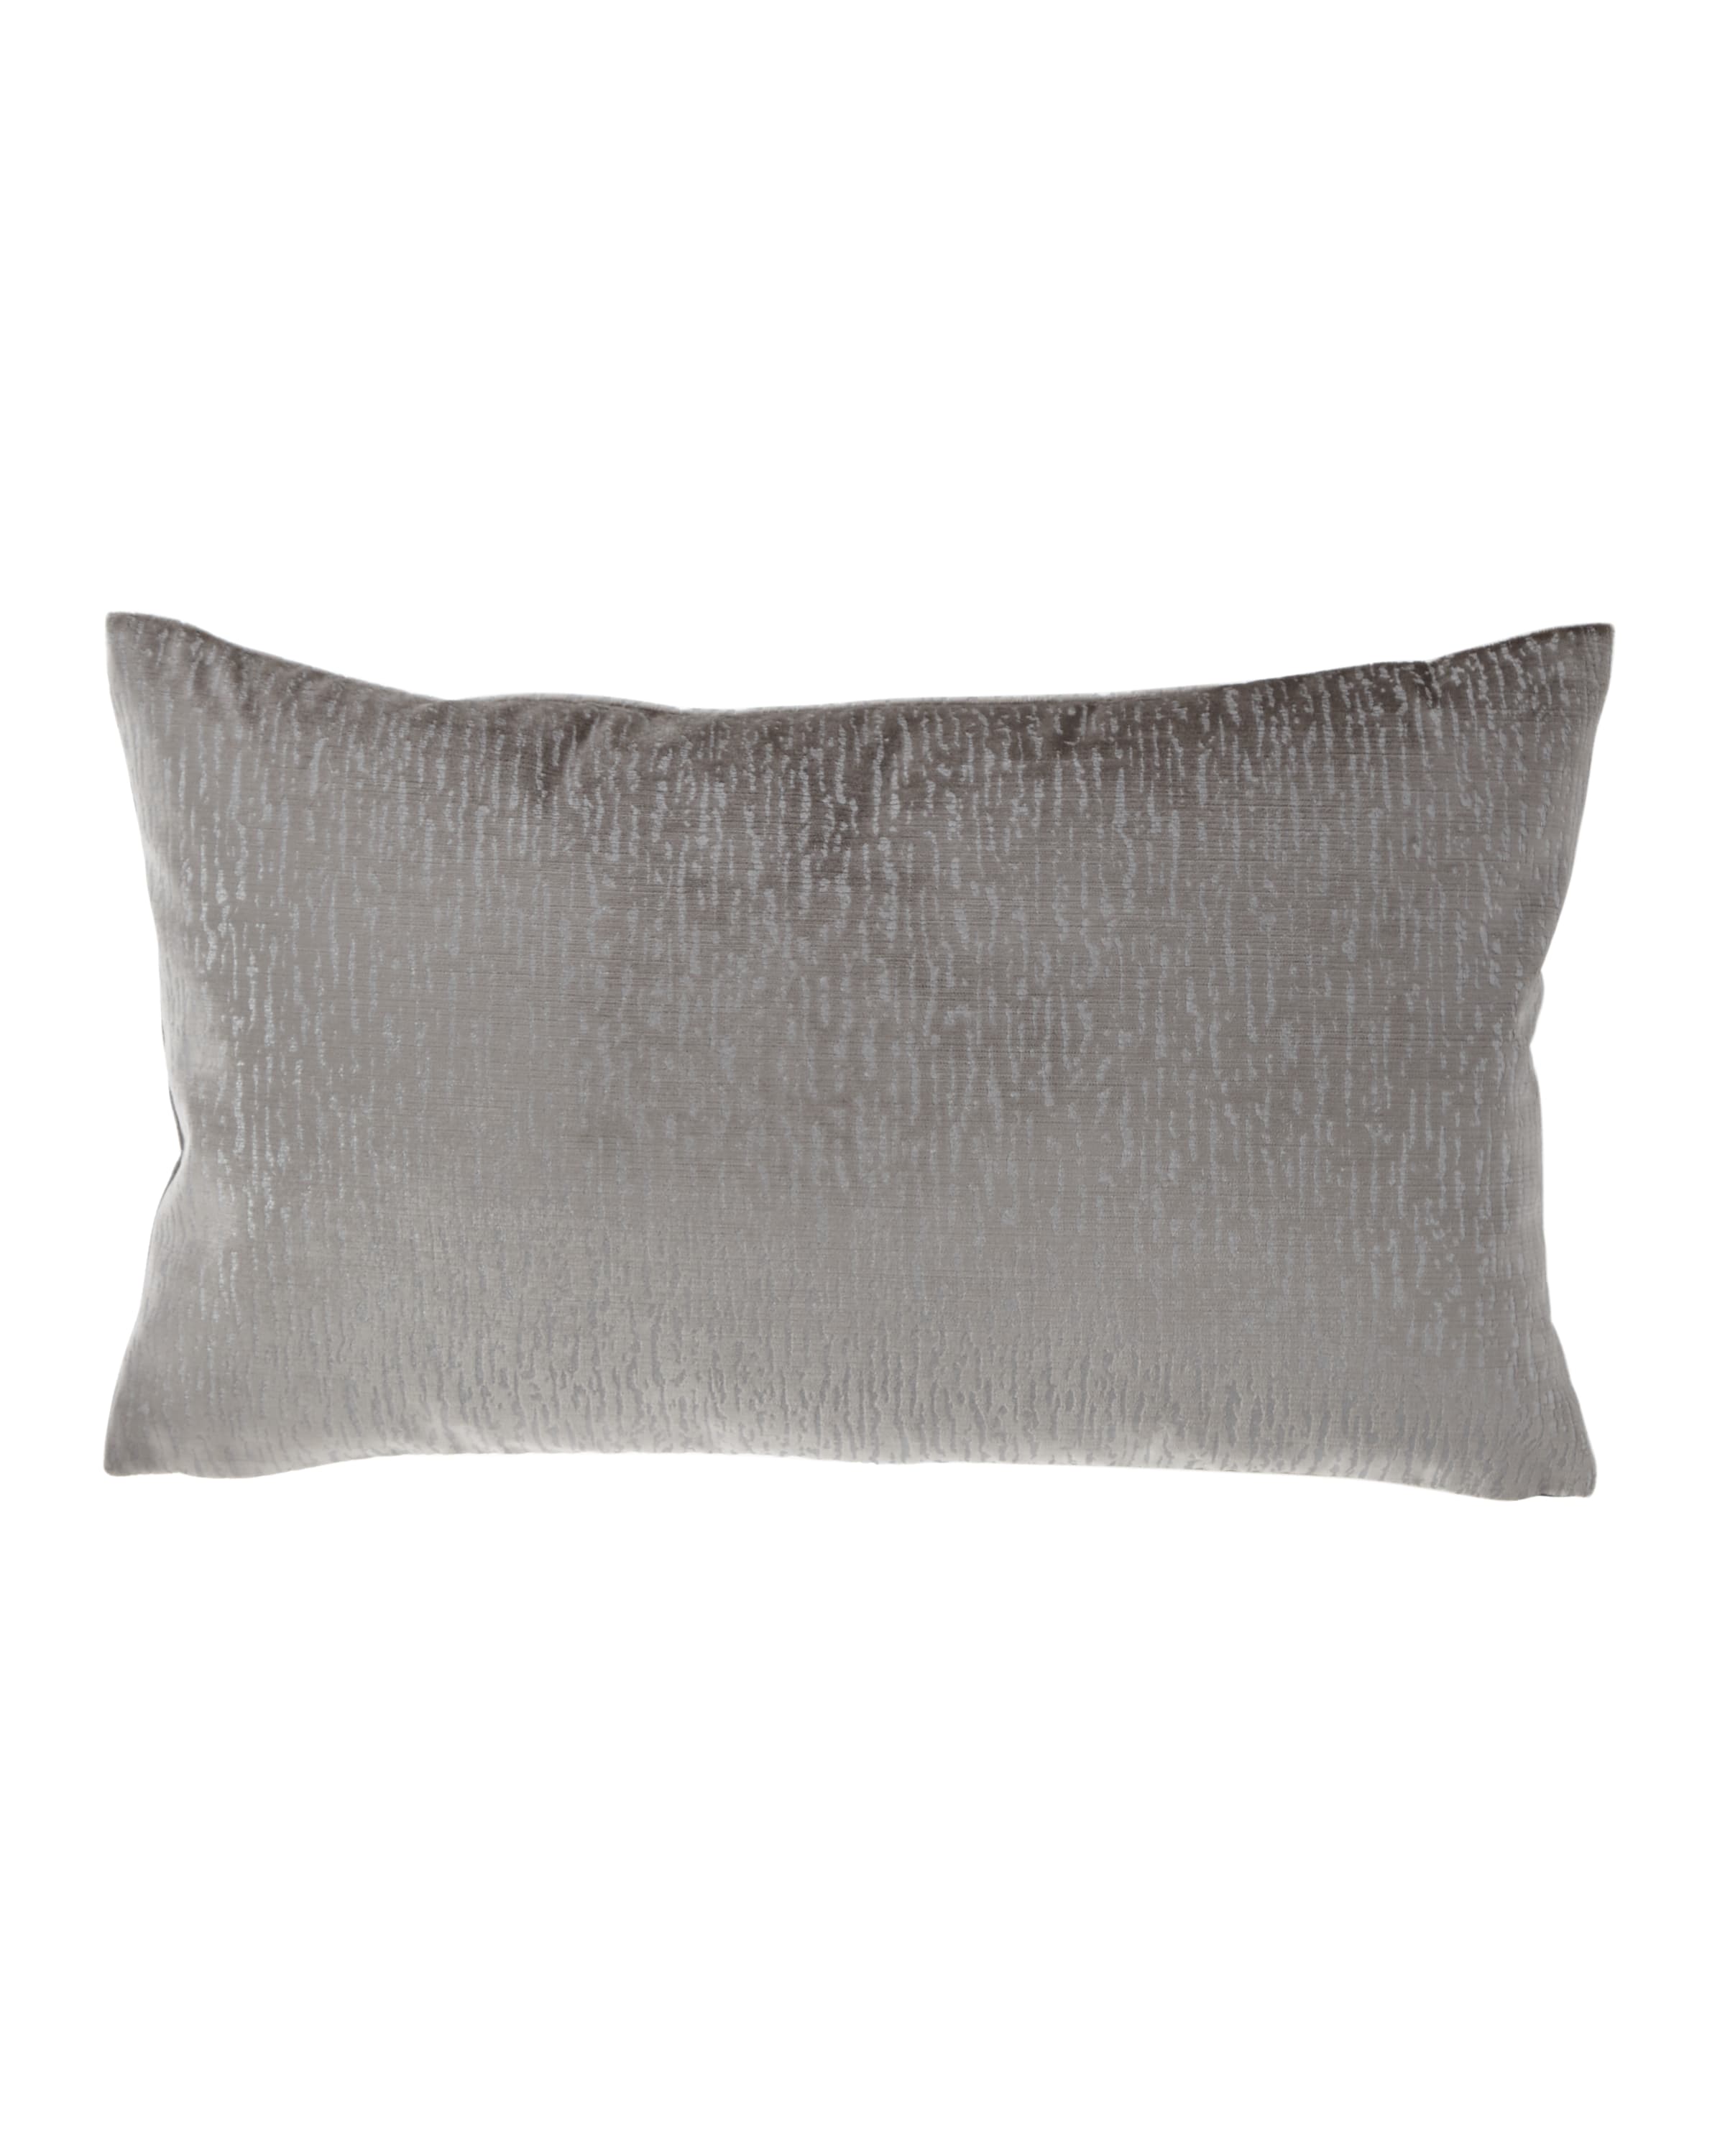 Image Jane Wilner Designs Tides Velvet Rectangular Pillow